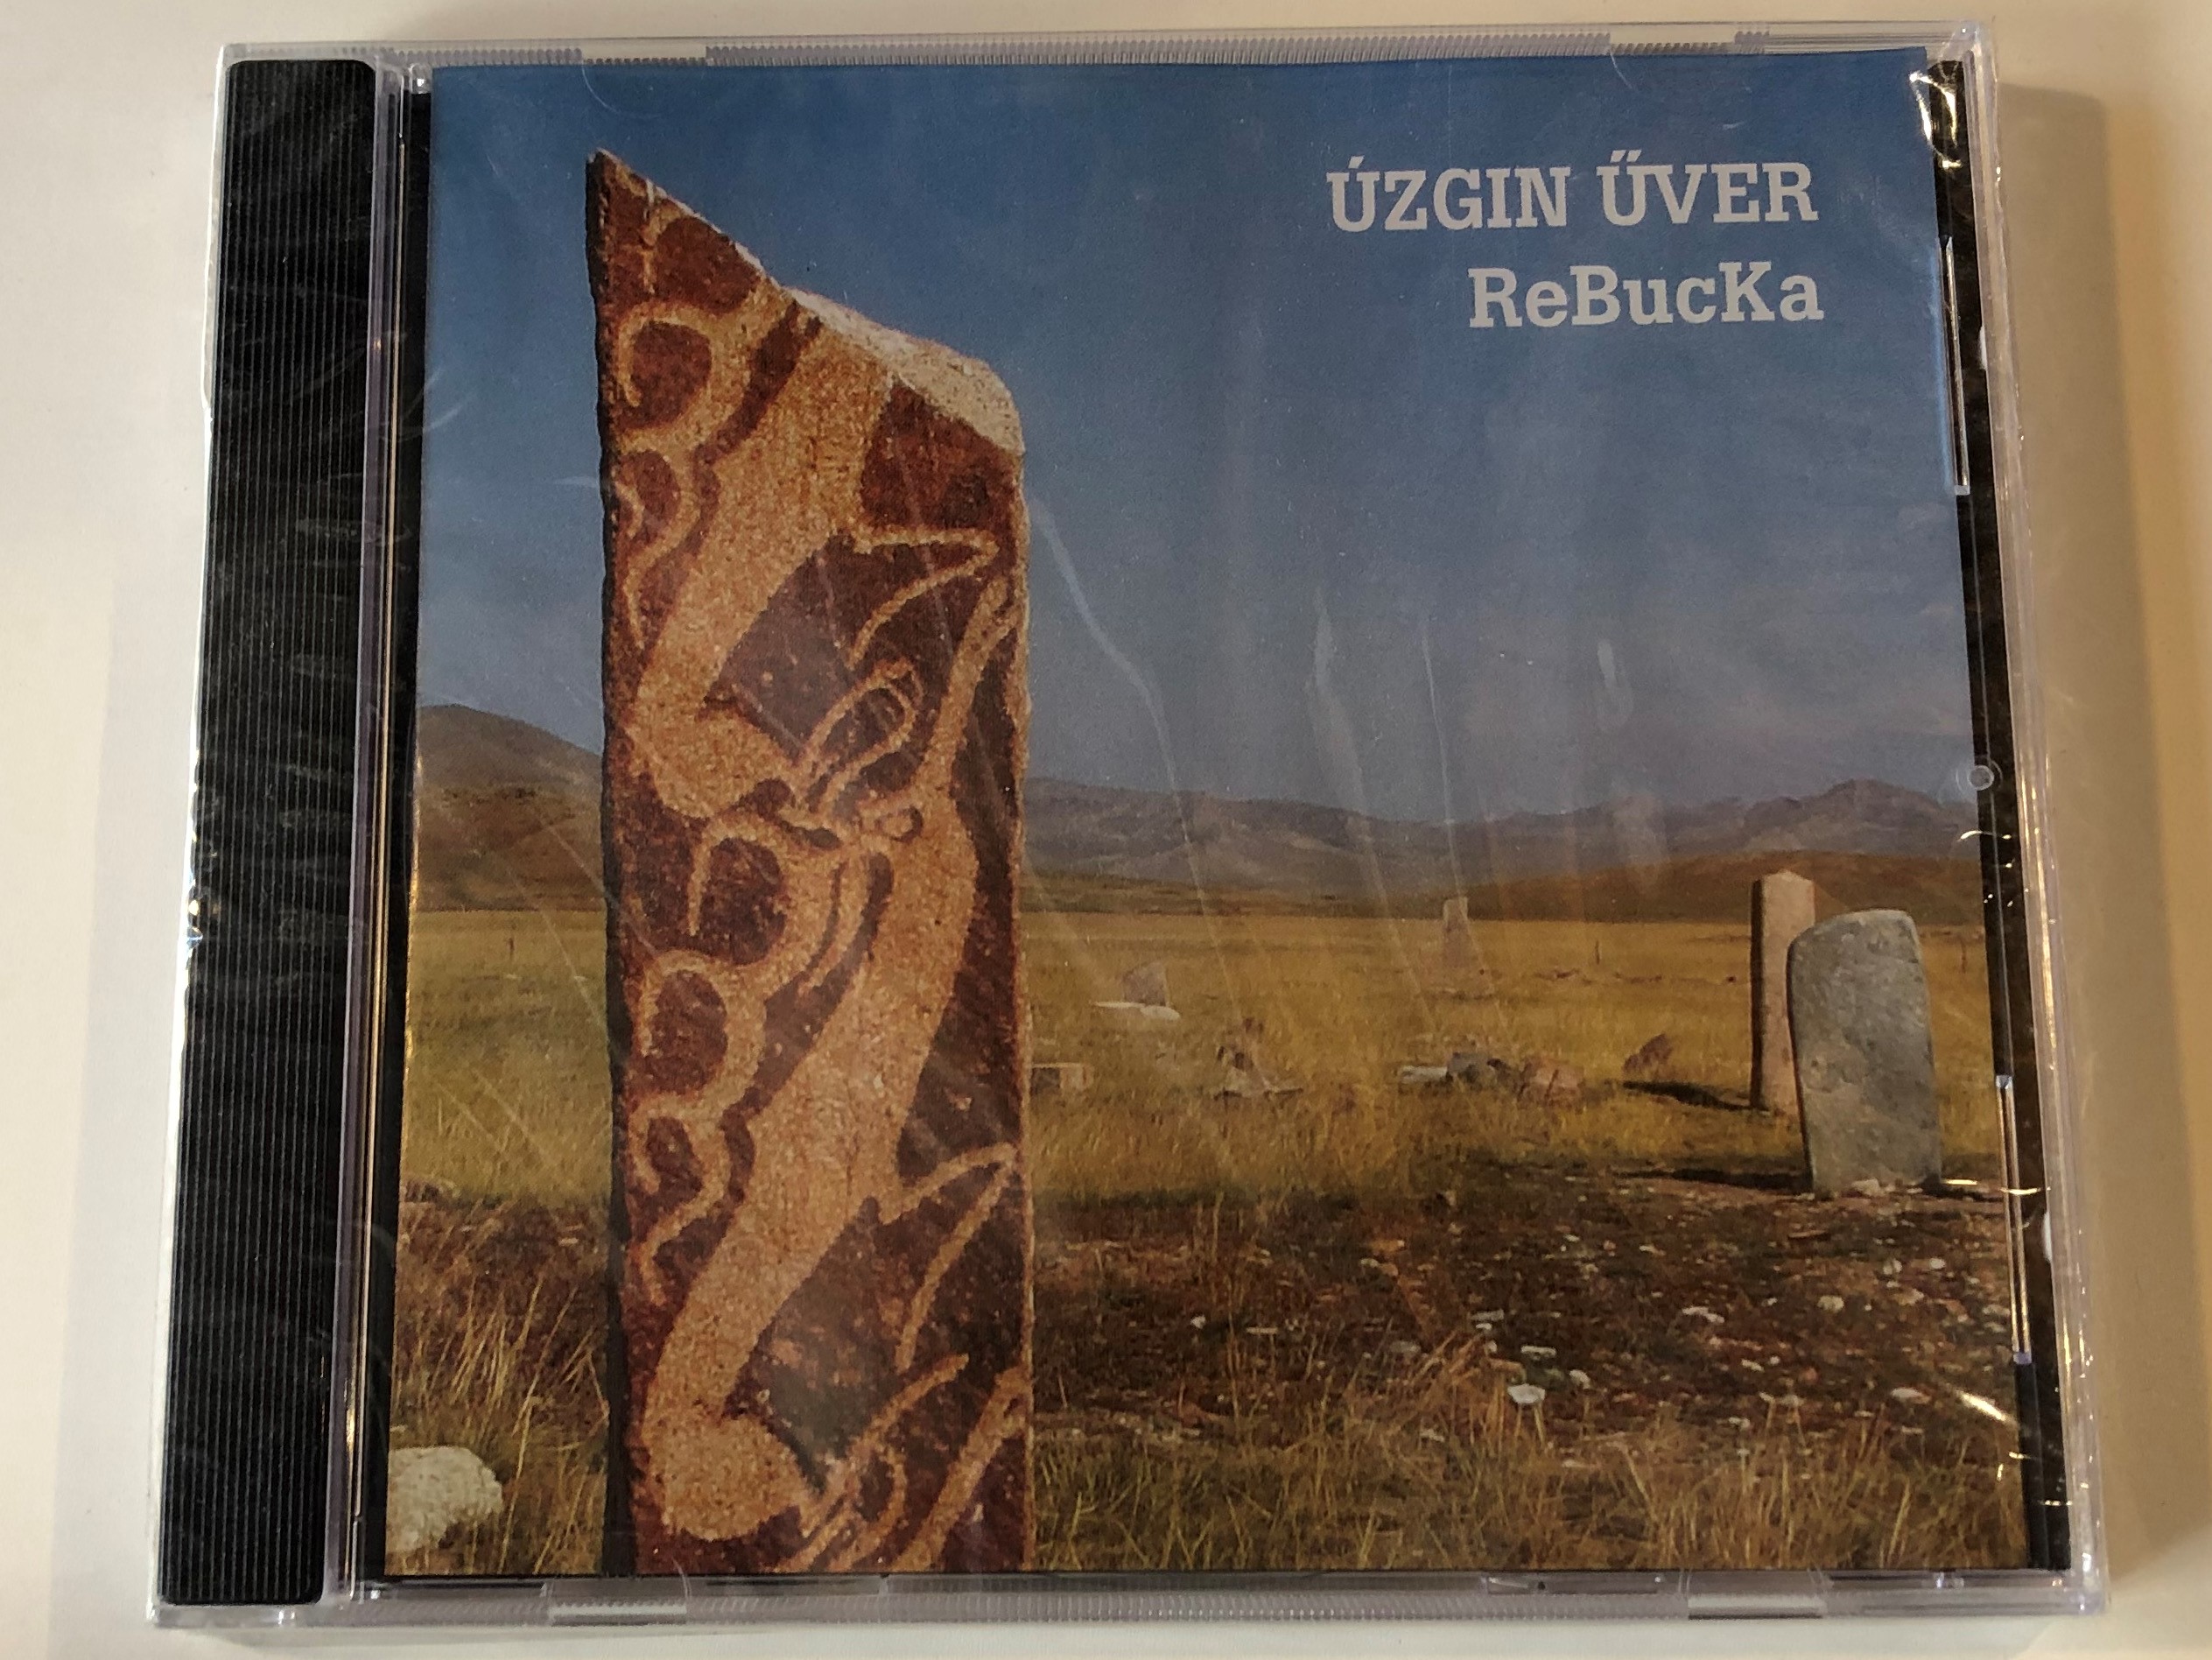 zgin-ver-rebucka-narrator-records-audio-cd-2012-nrr128-1-.jpg